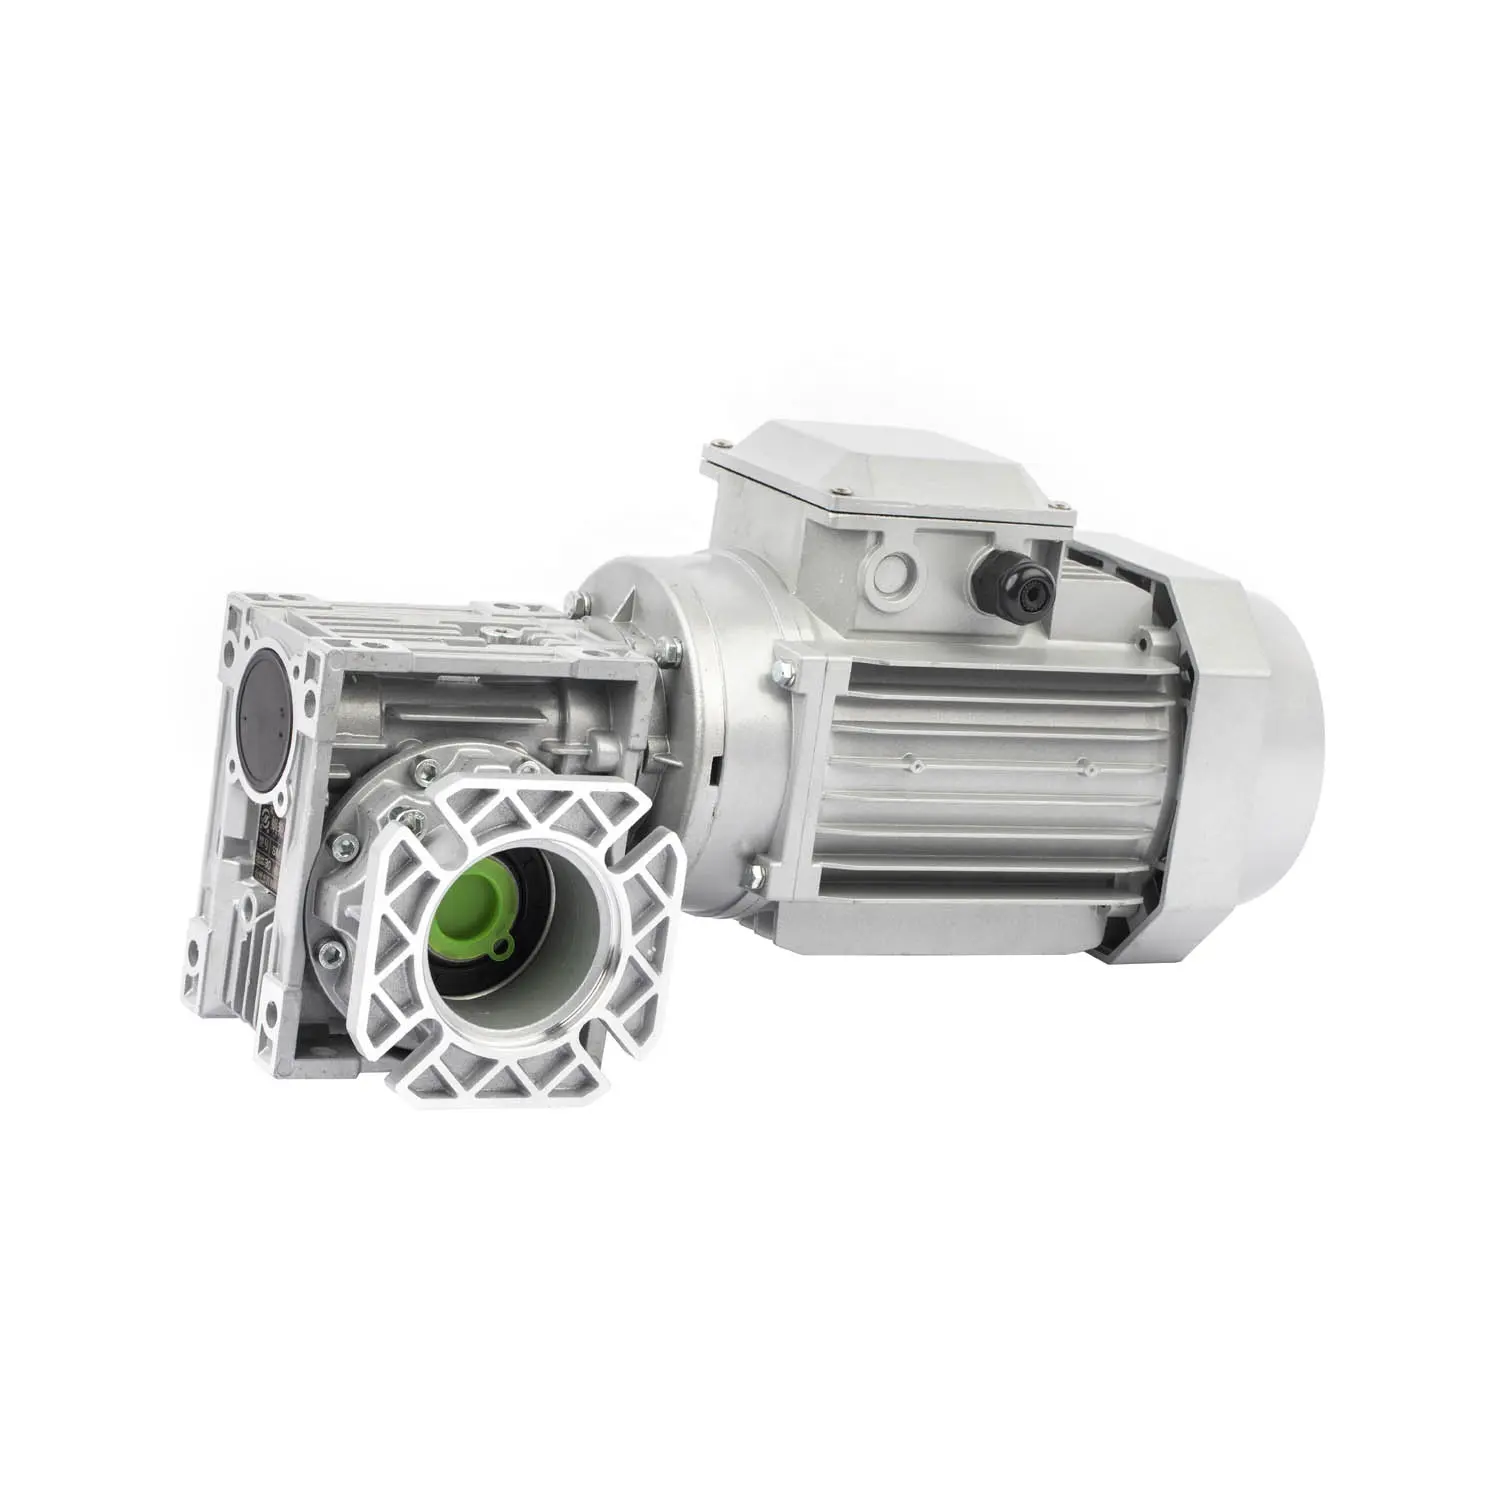 worm gearbox marine engine transmission motor gearbox speed reducer